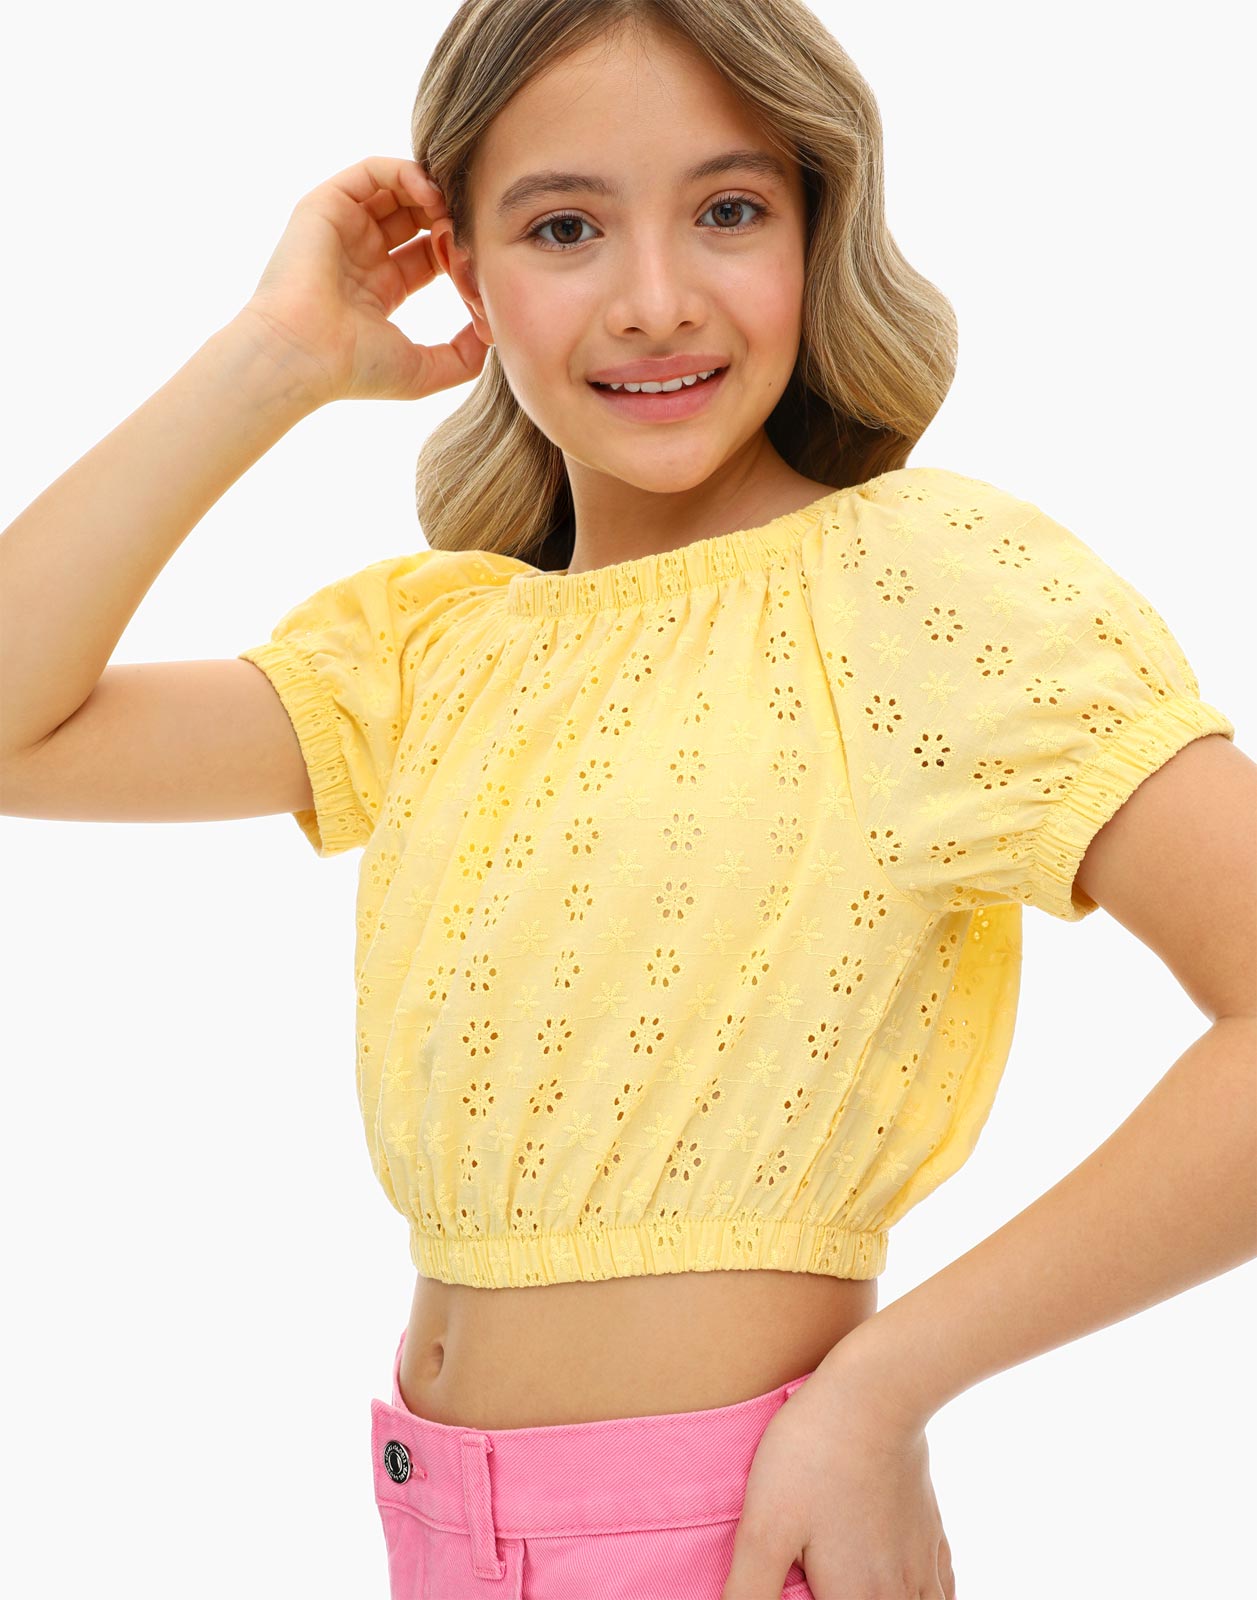 Светло-жёлтая блузка с вышивкой ришелье для девочки 10-12л/146-152